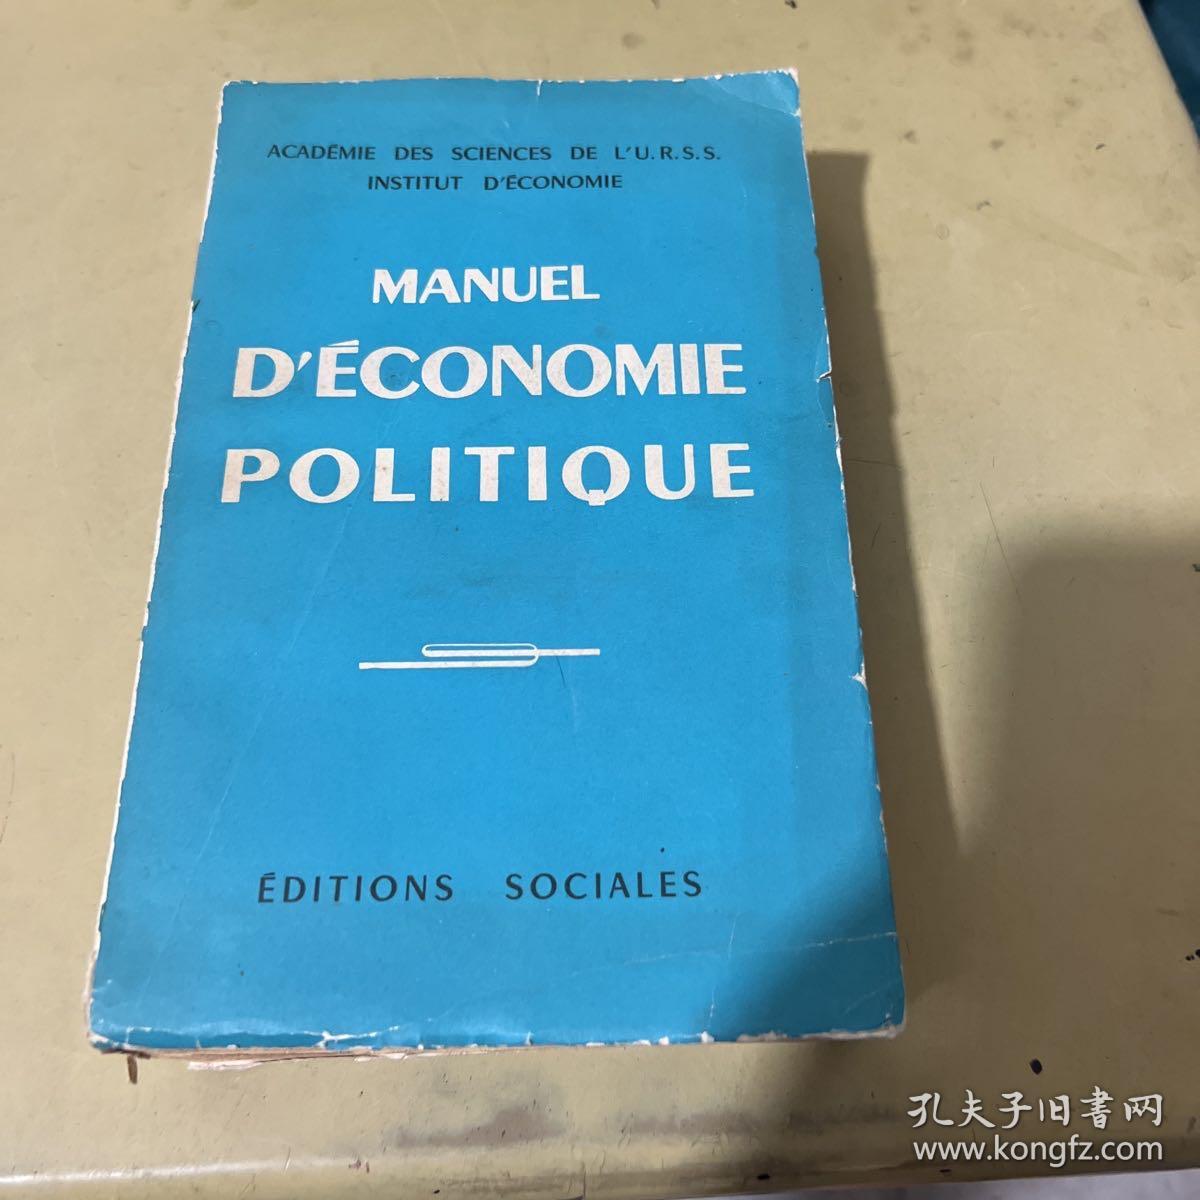 MANUEL D'ECONOMIE POLITIQUE